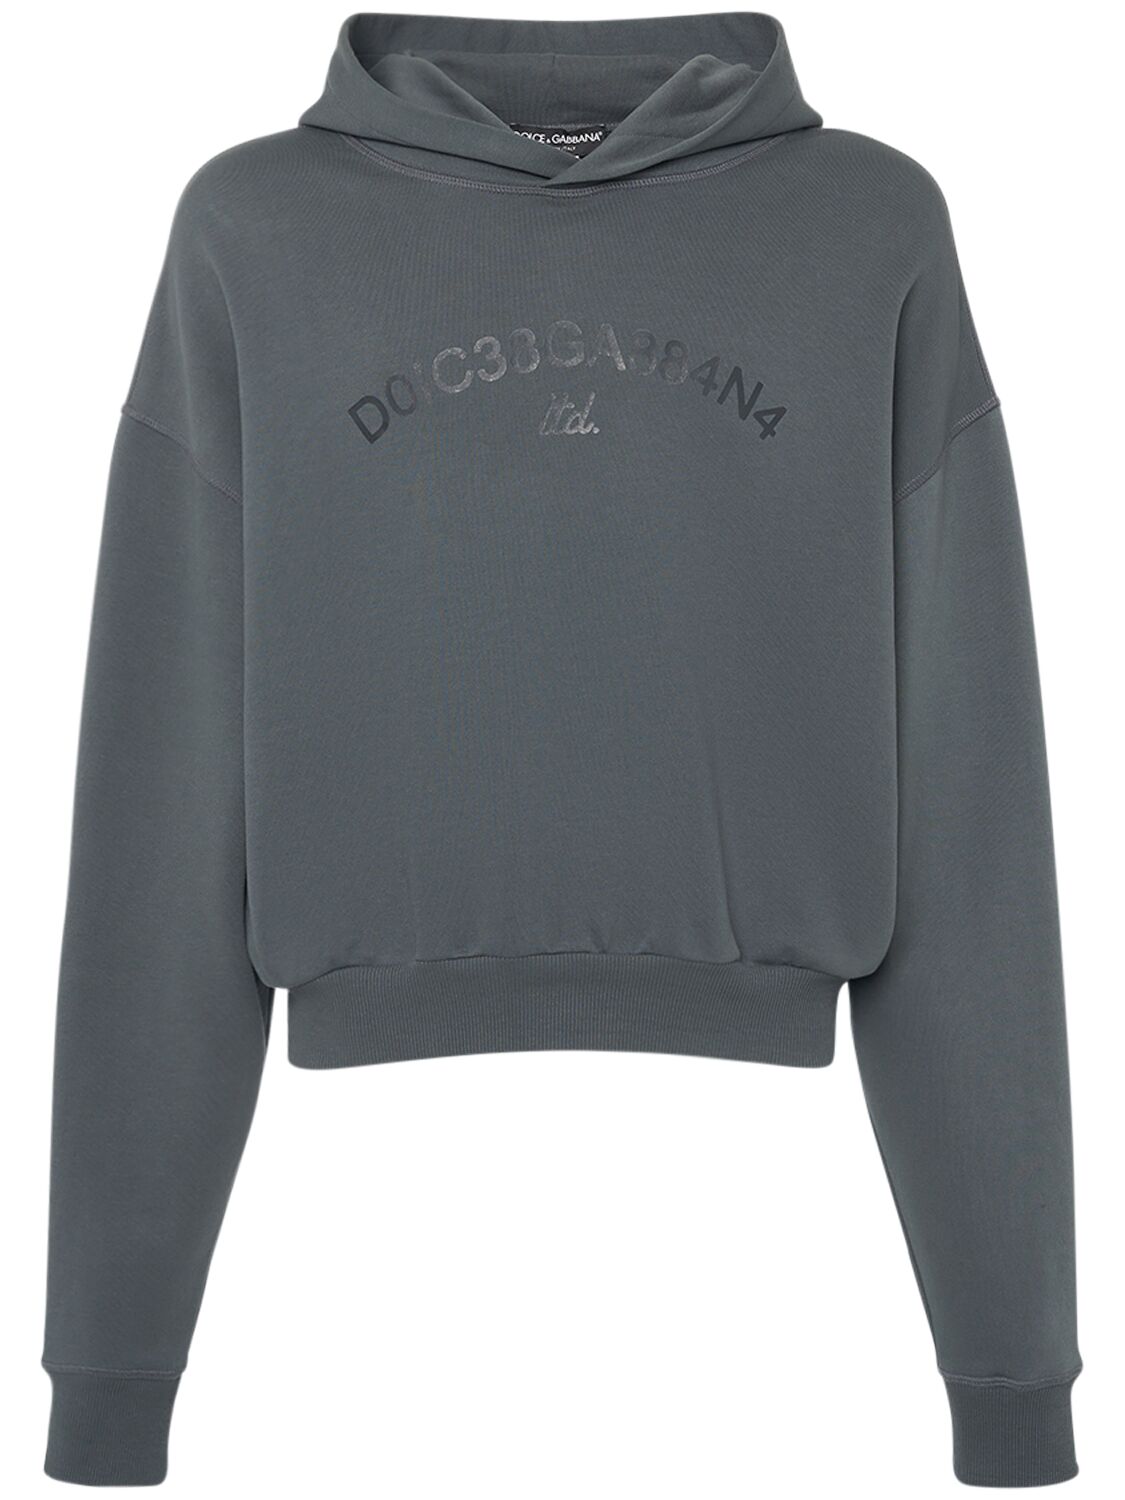 Dolce & Gabbana Cropped Jersey Sweatshirt In Multi